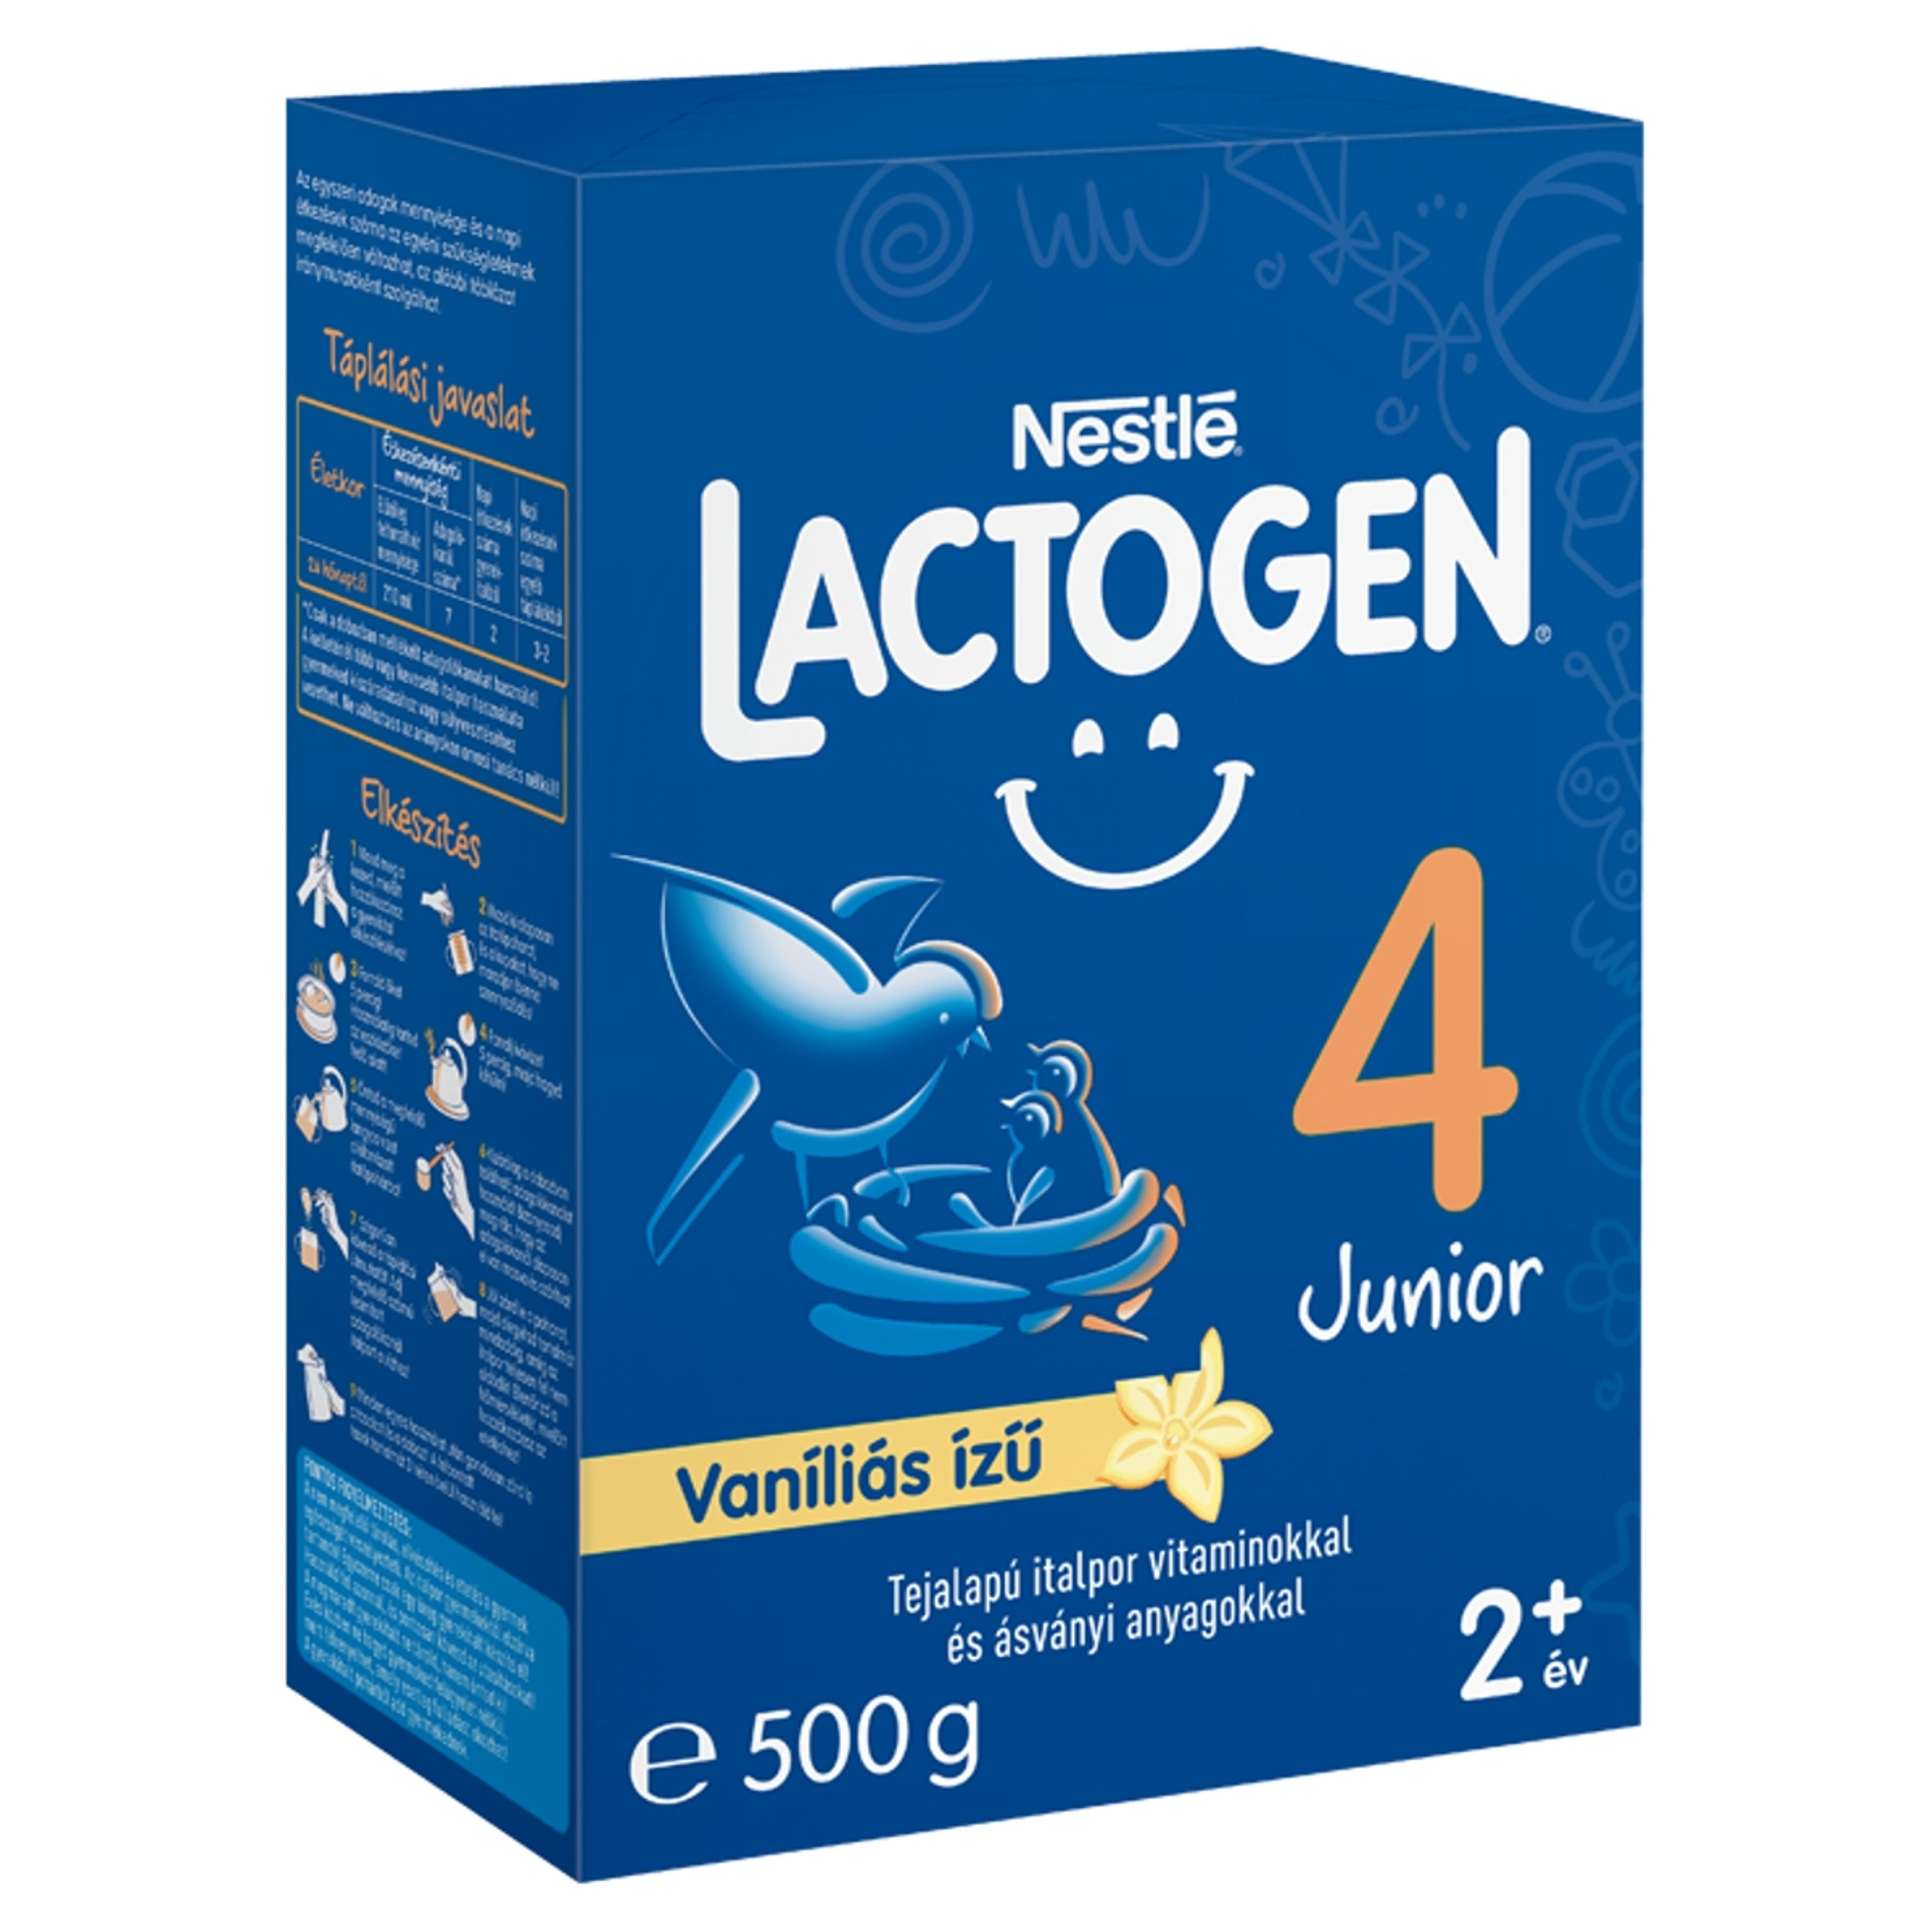 Lactogen 4 Junior tejalapú italpor vitaminokkal és ásványi anyagokkal vaníliás ízű 2 éves kortól - 500 g-2